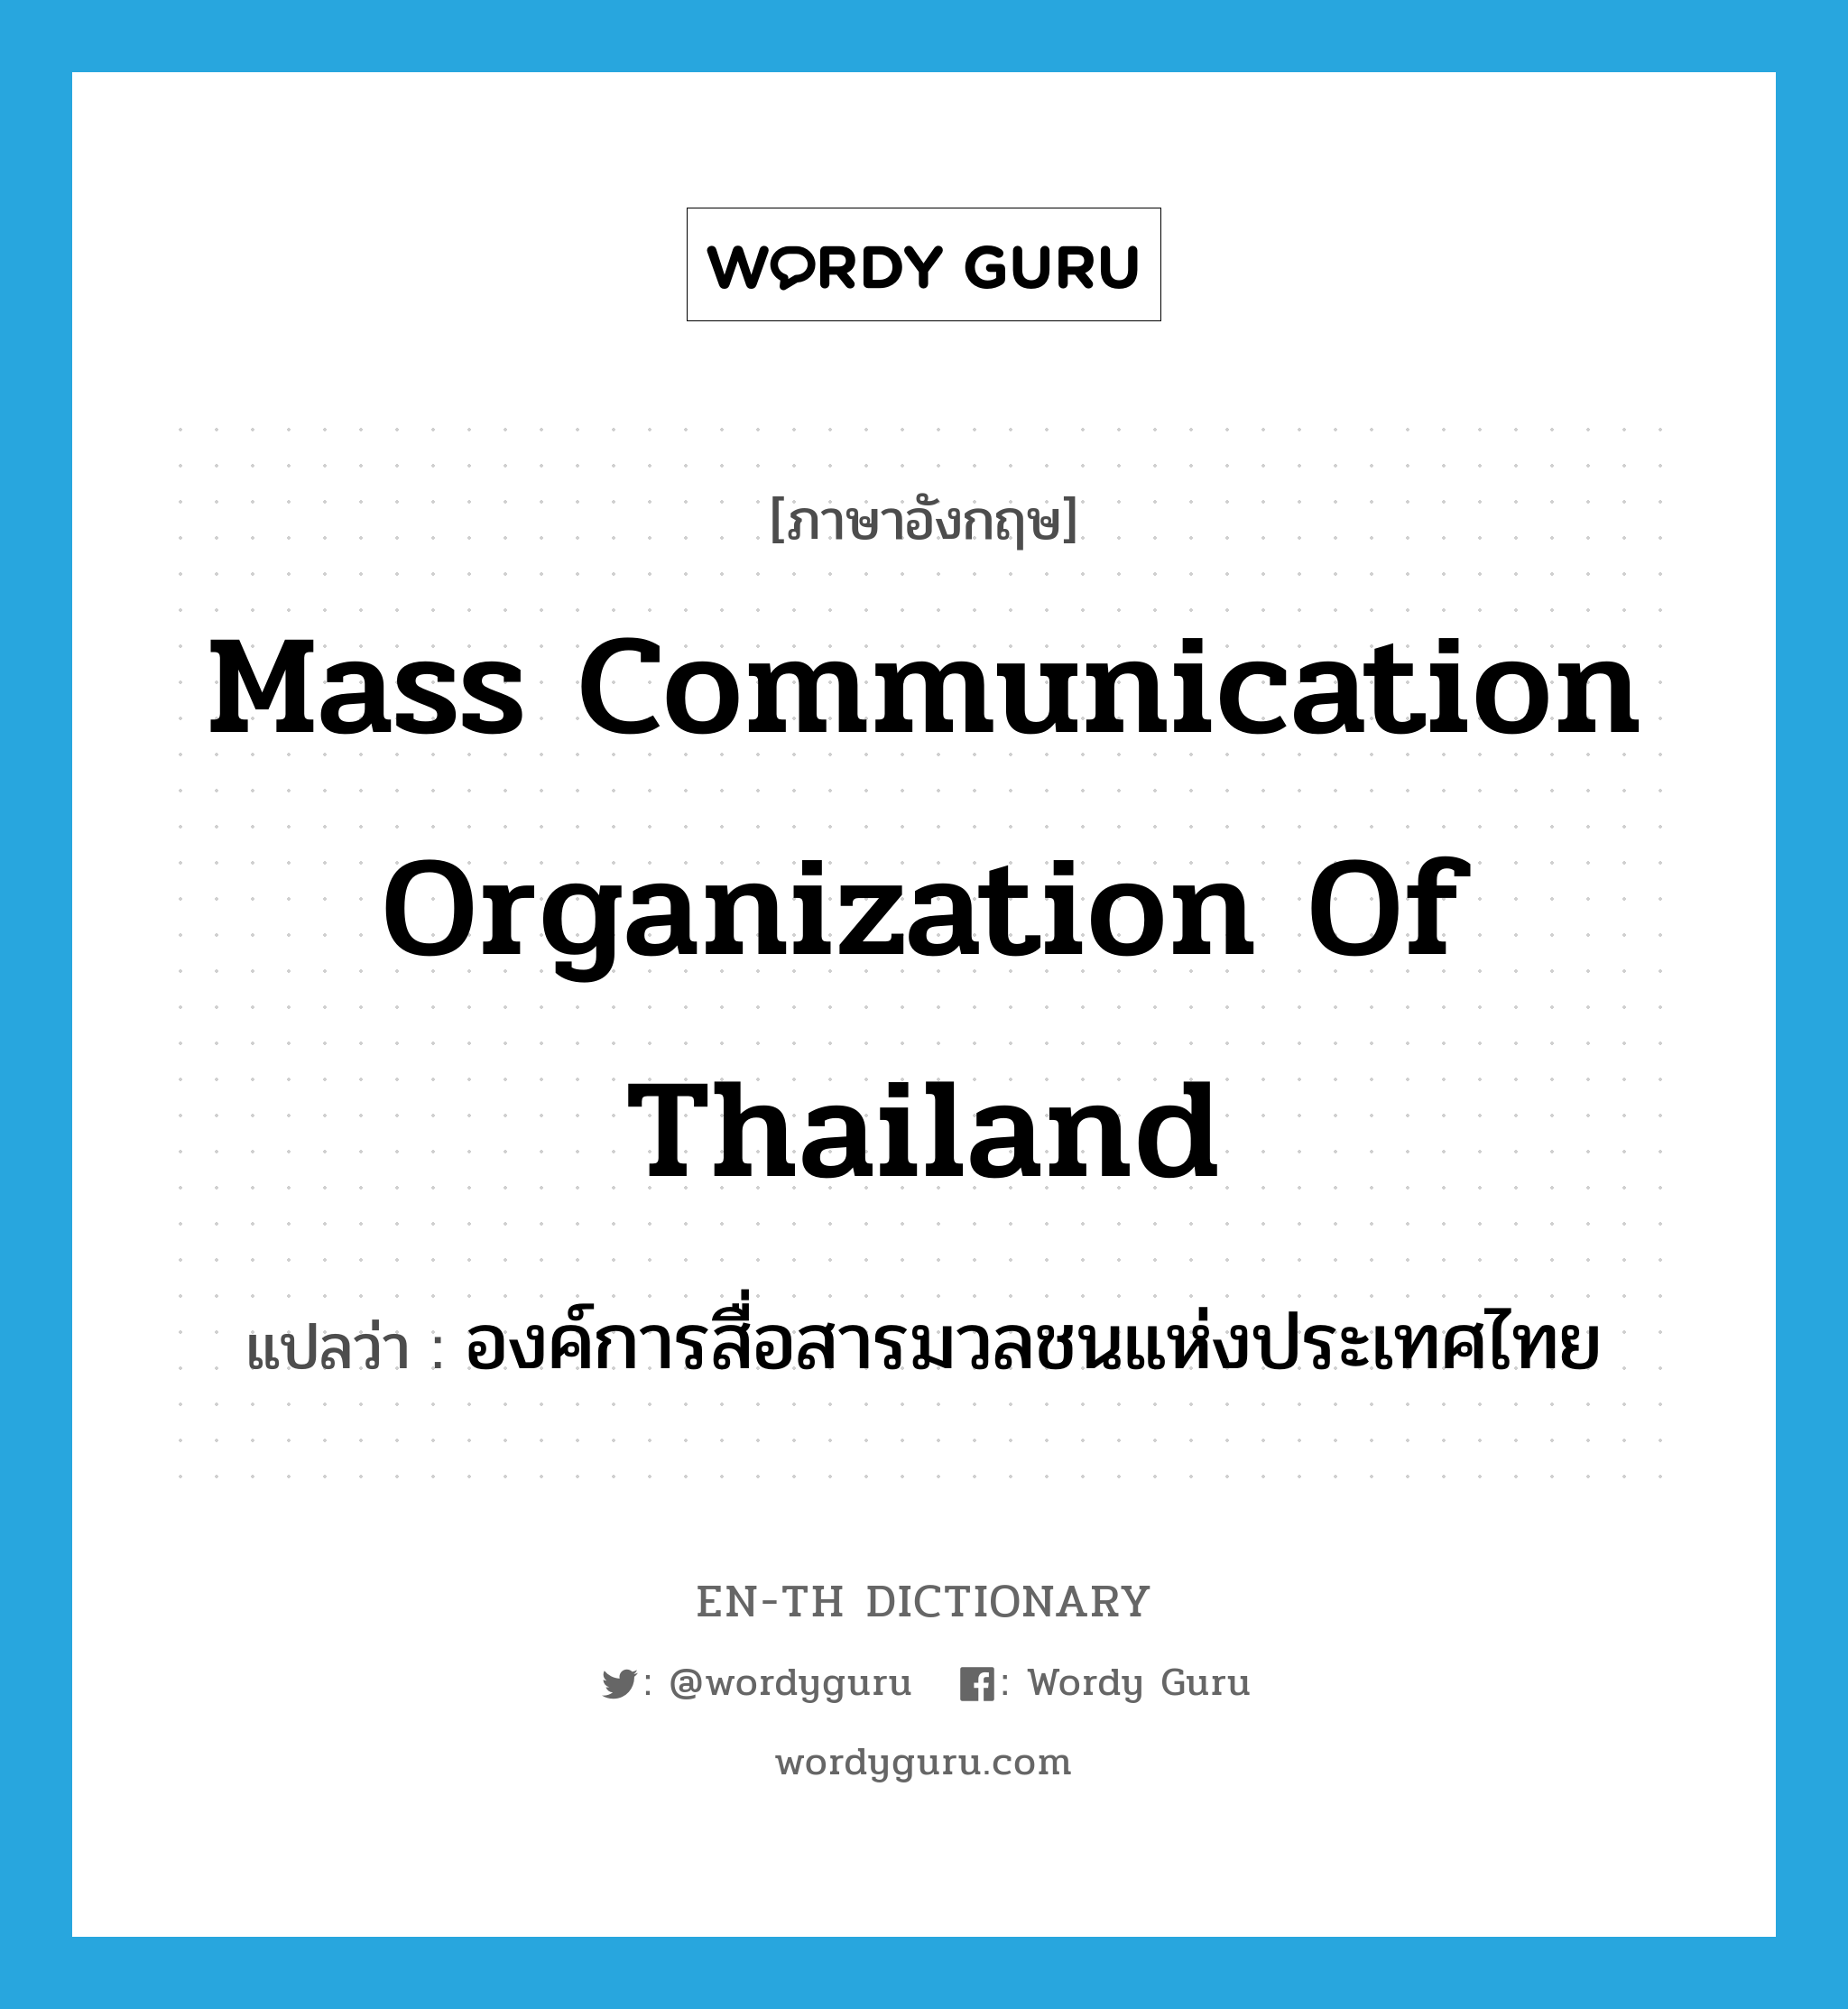 องค์การสื่อสารมวลชนแห่งประเทศไทย ภาษาอังกฤษ?, คำศัพท์ภาษาอังกฤษ องค์การสื่อสารมวลชนแห่งประเทศไทย แปลว่า Mass Communication Organization of Thailand ประเภท N หมวด N